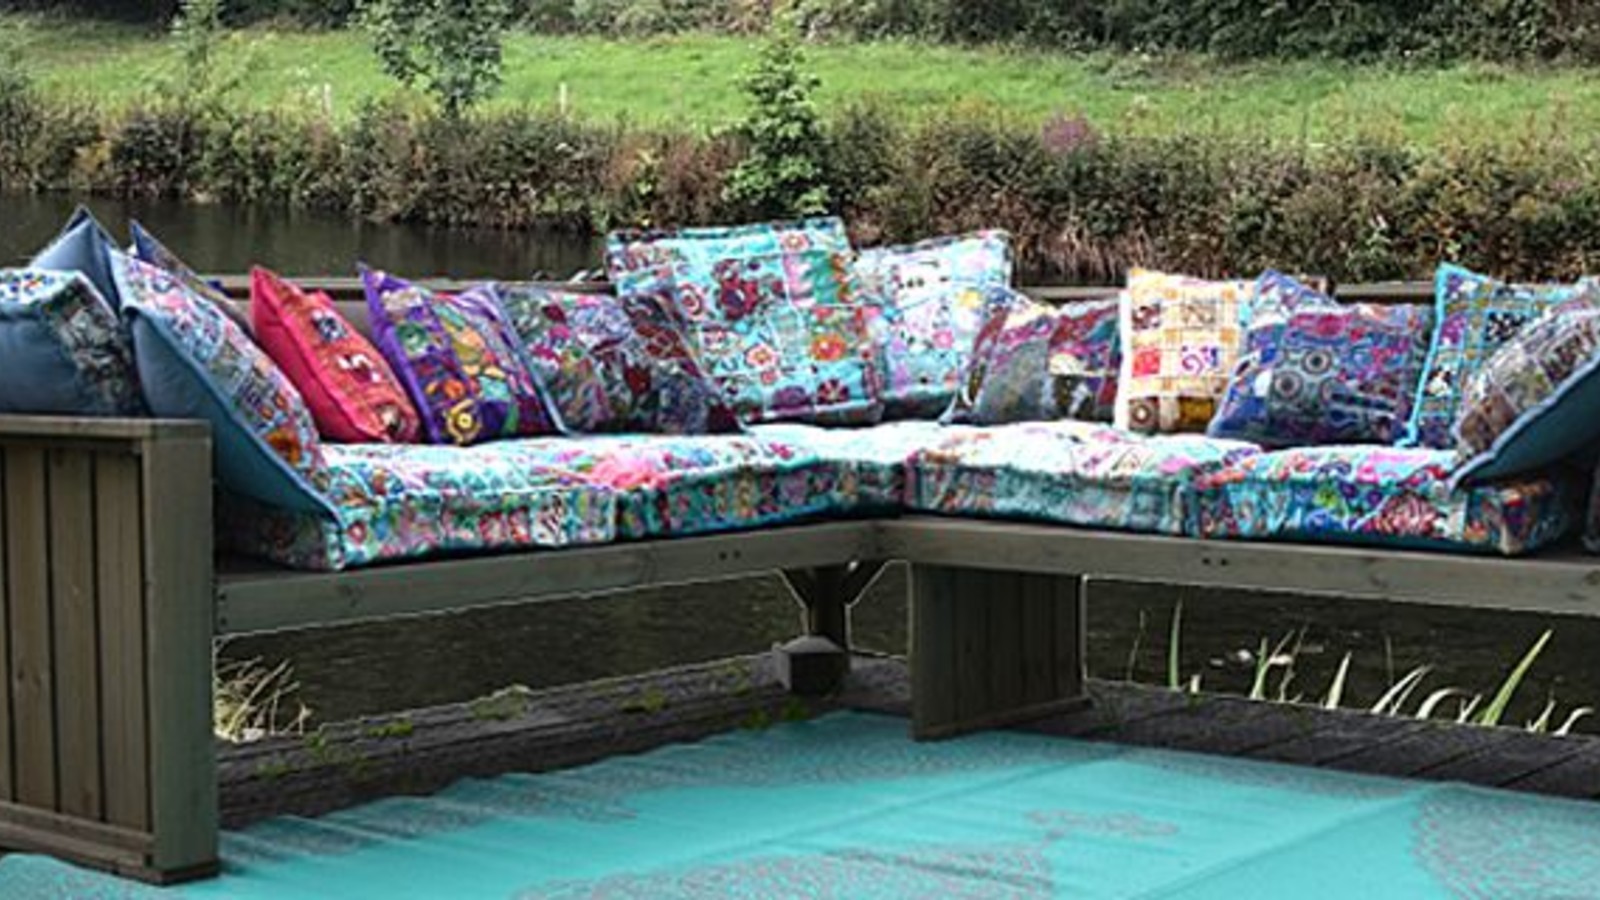 Meerdere Evenement Chromatisch Mooie kleurrijke matraskussens voor op een palletbank of tuinbank - Merel  in Wonderland